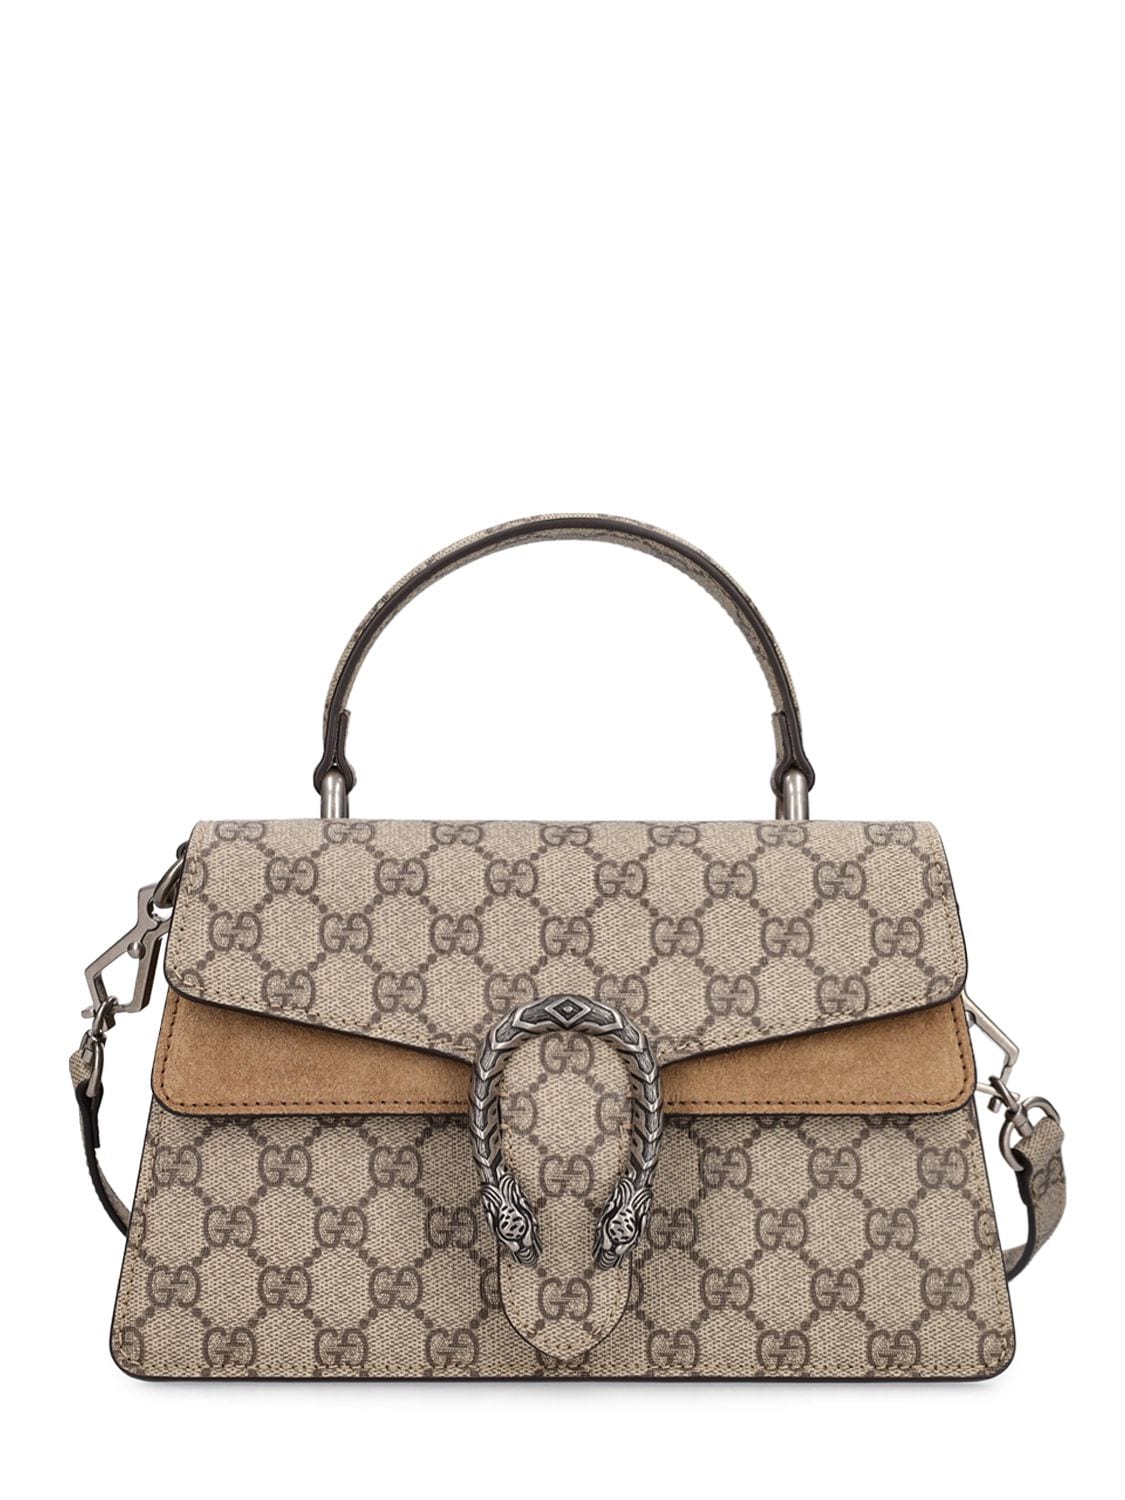 Gucci Dionysus Gg Canvas Top Handle Bag In Ebony